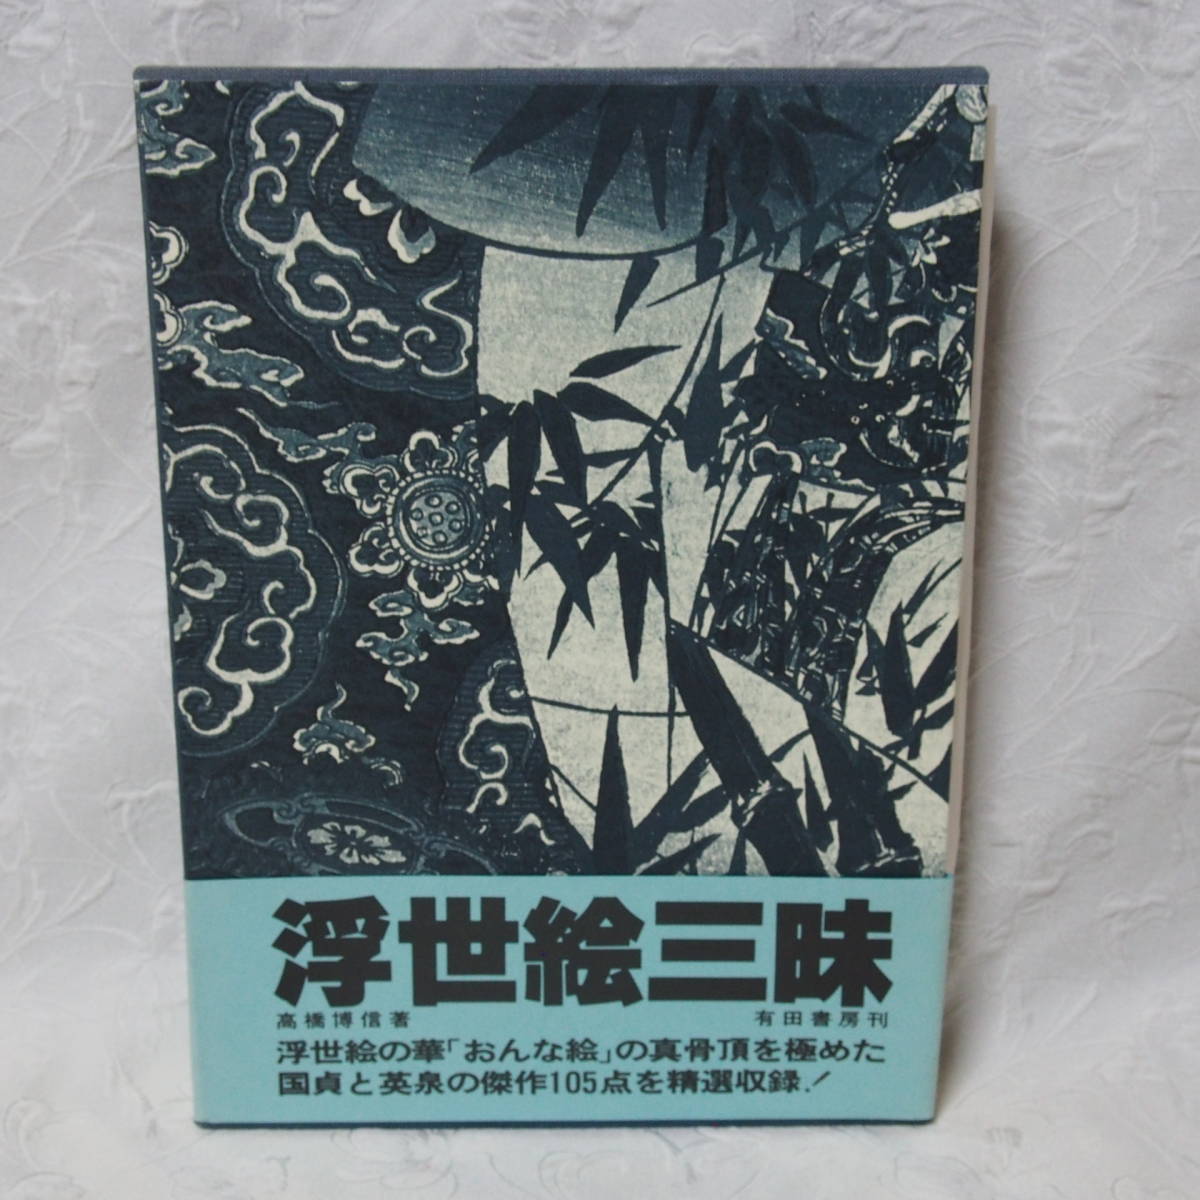 Wertvoll, selten, und Sammlerausgabe!! Hochwertiges Buch Ukiyo-e Zanmai / Hironobu Takahashi / Veröffentlicht am 15. Dezember, 1980 (damaliger Preis:, 5000 Yen), Malerei, Ukiyo-e, Drucke, Portrait einer schönen Frau